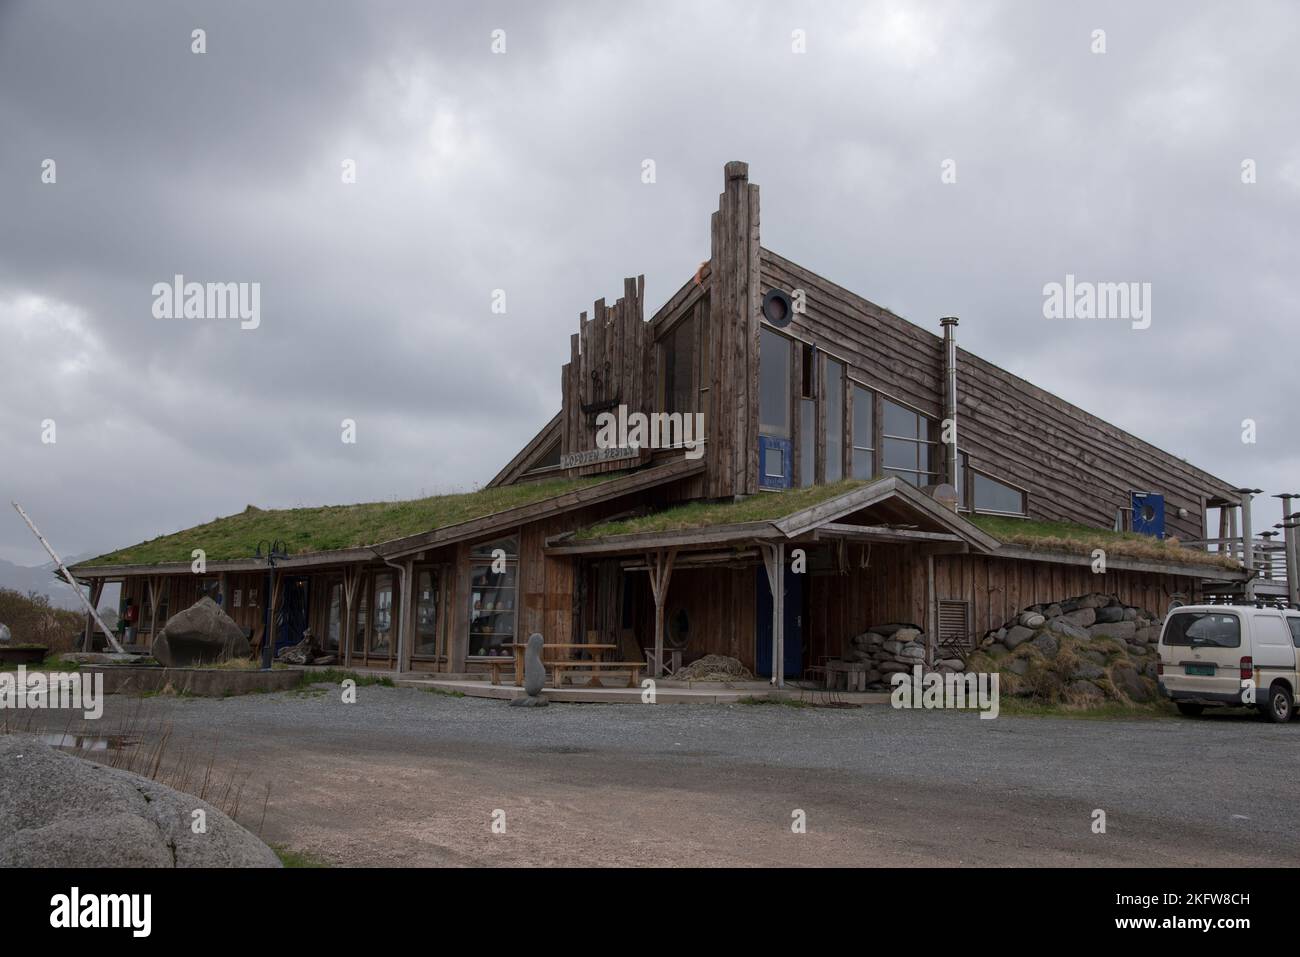 Vikten è un piccolo villaggio sull'isola di Flakstadøya, nell'arcipelago delle Lofoten, nella contea di Nordland, in Norvegia Foto Stock